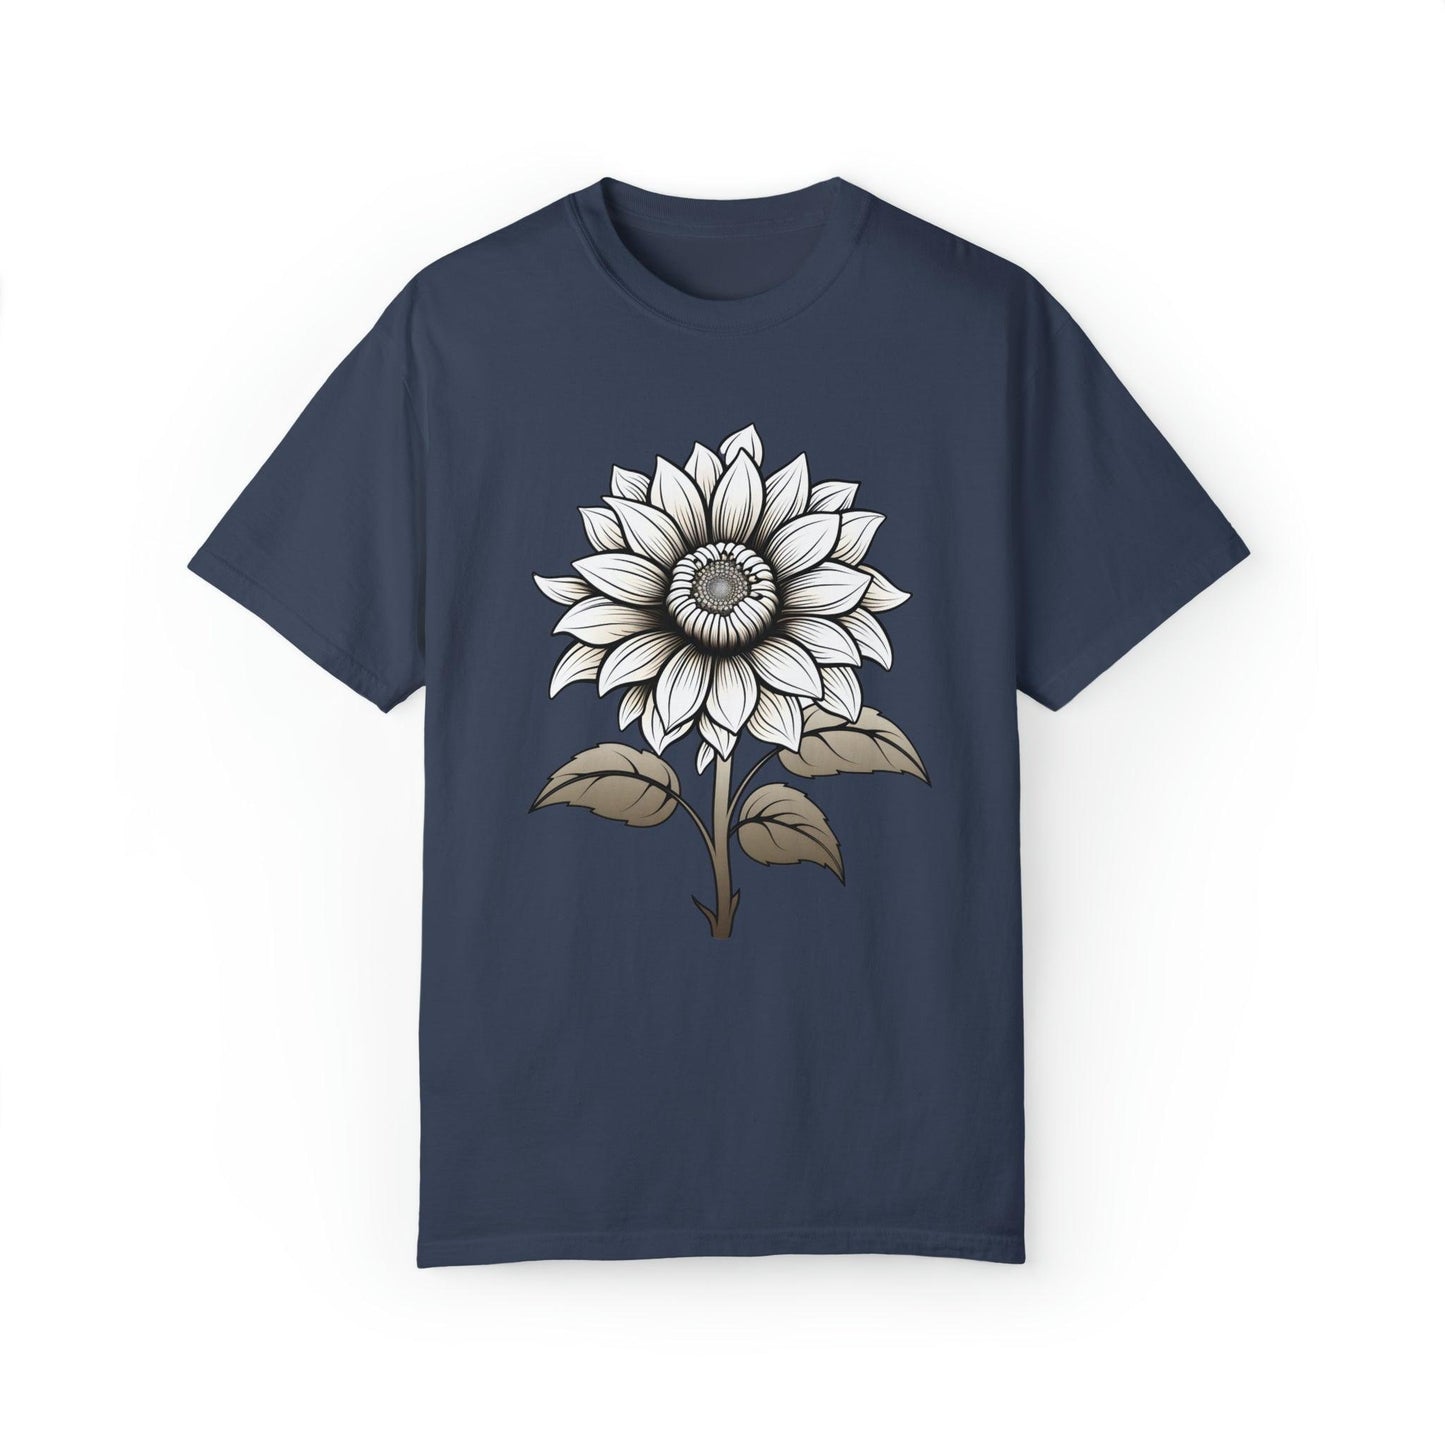 Sunflower Shirt Vintage Flower Shirt Aesthetic, Floral Graphic Tee Floral Shirt Flower T-shirt, Wild Flower Shirt Gift For Her - Giftsmojo